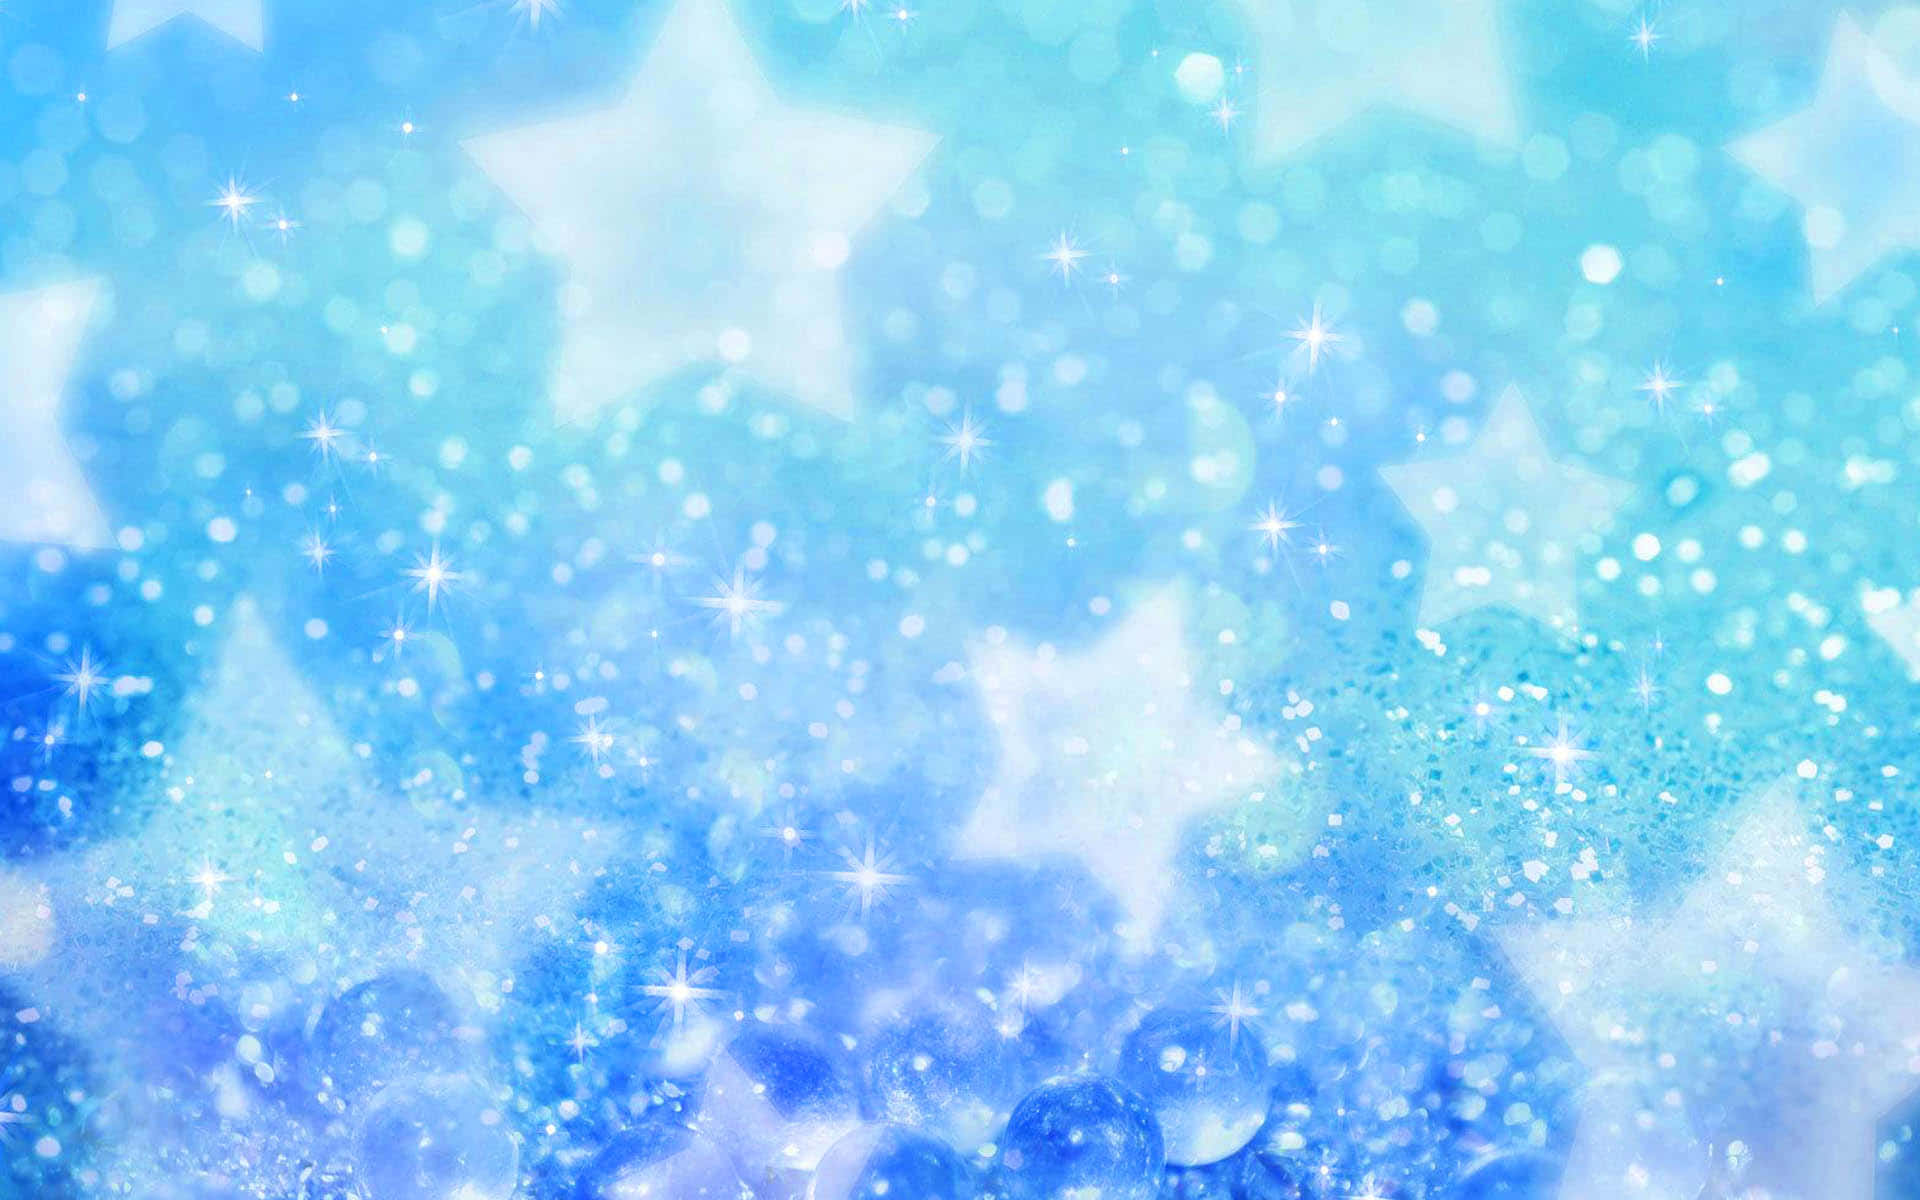 Blue Sparkle on a Shiny Background